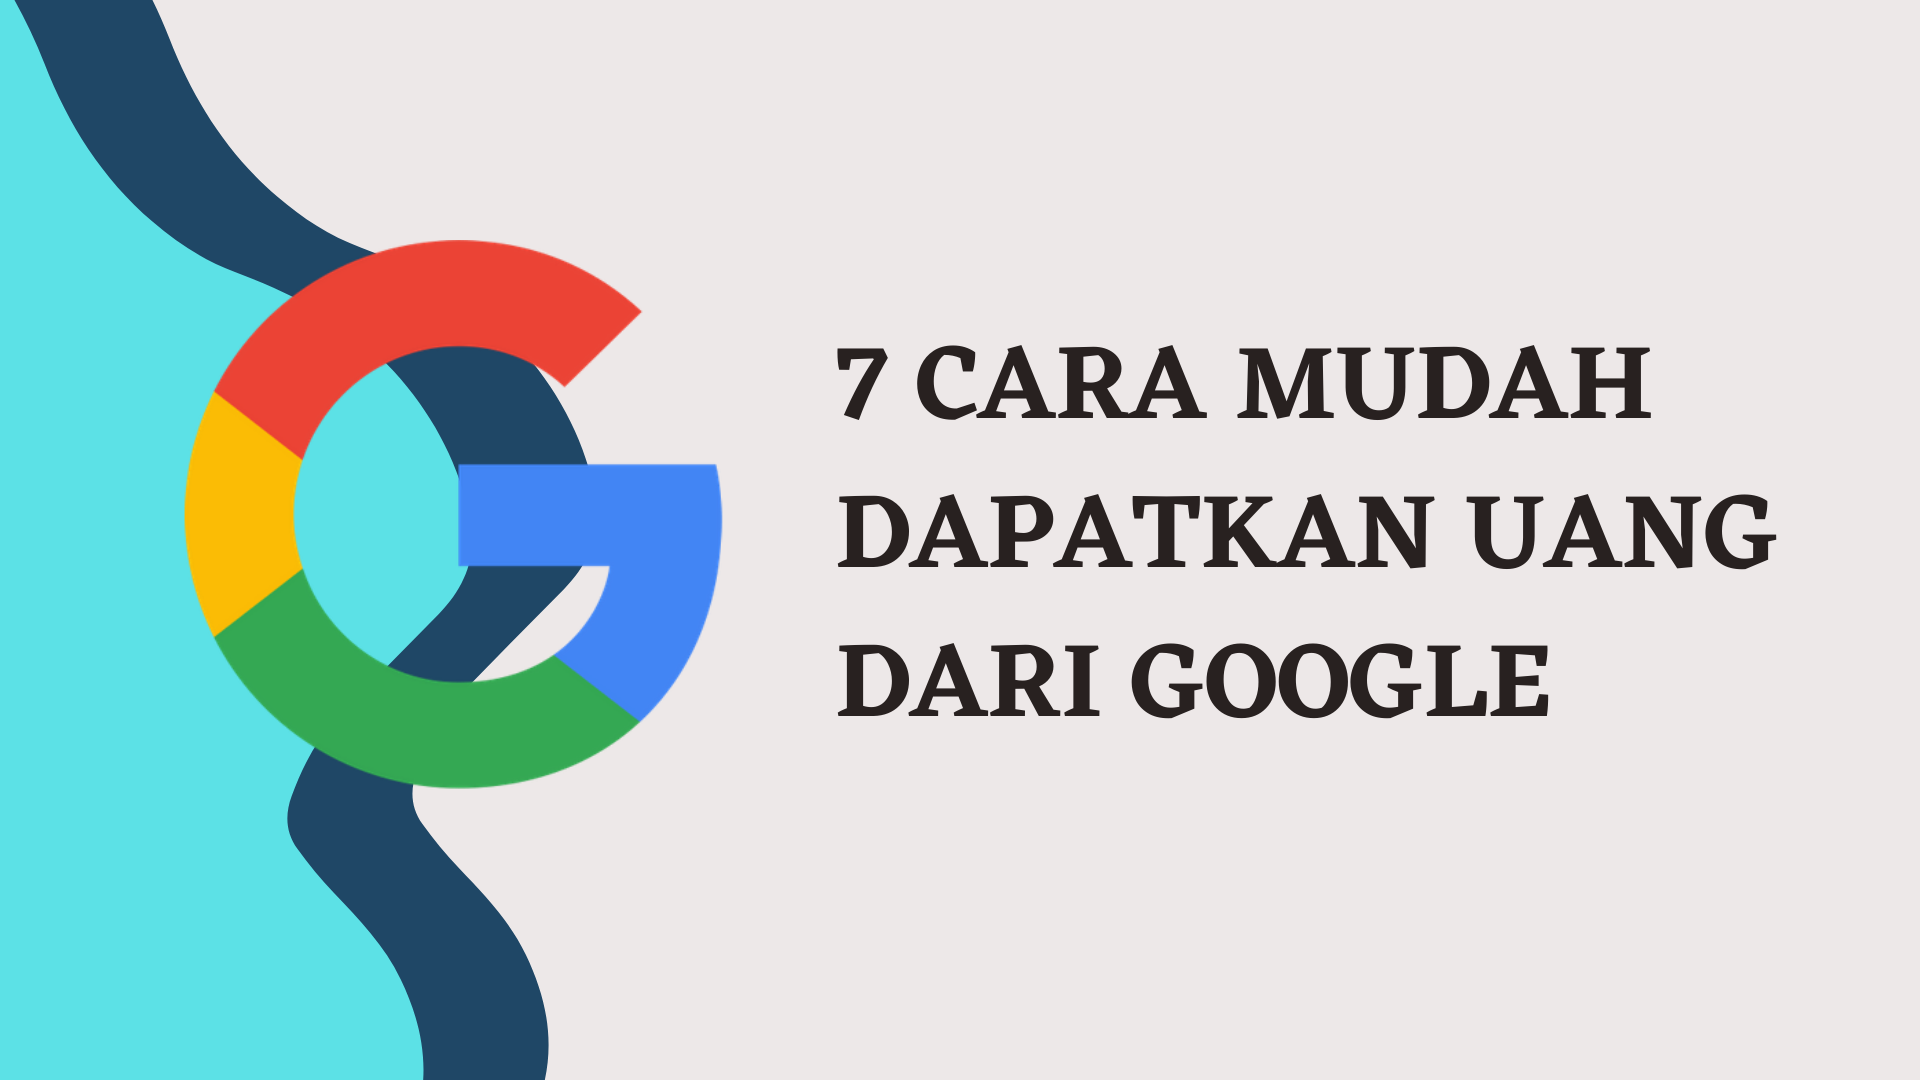 7 cara dapatkan uang dari google